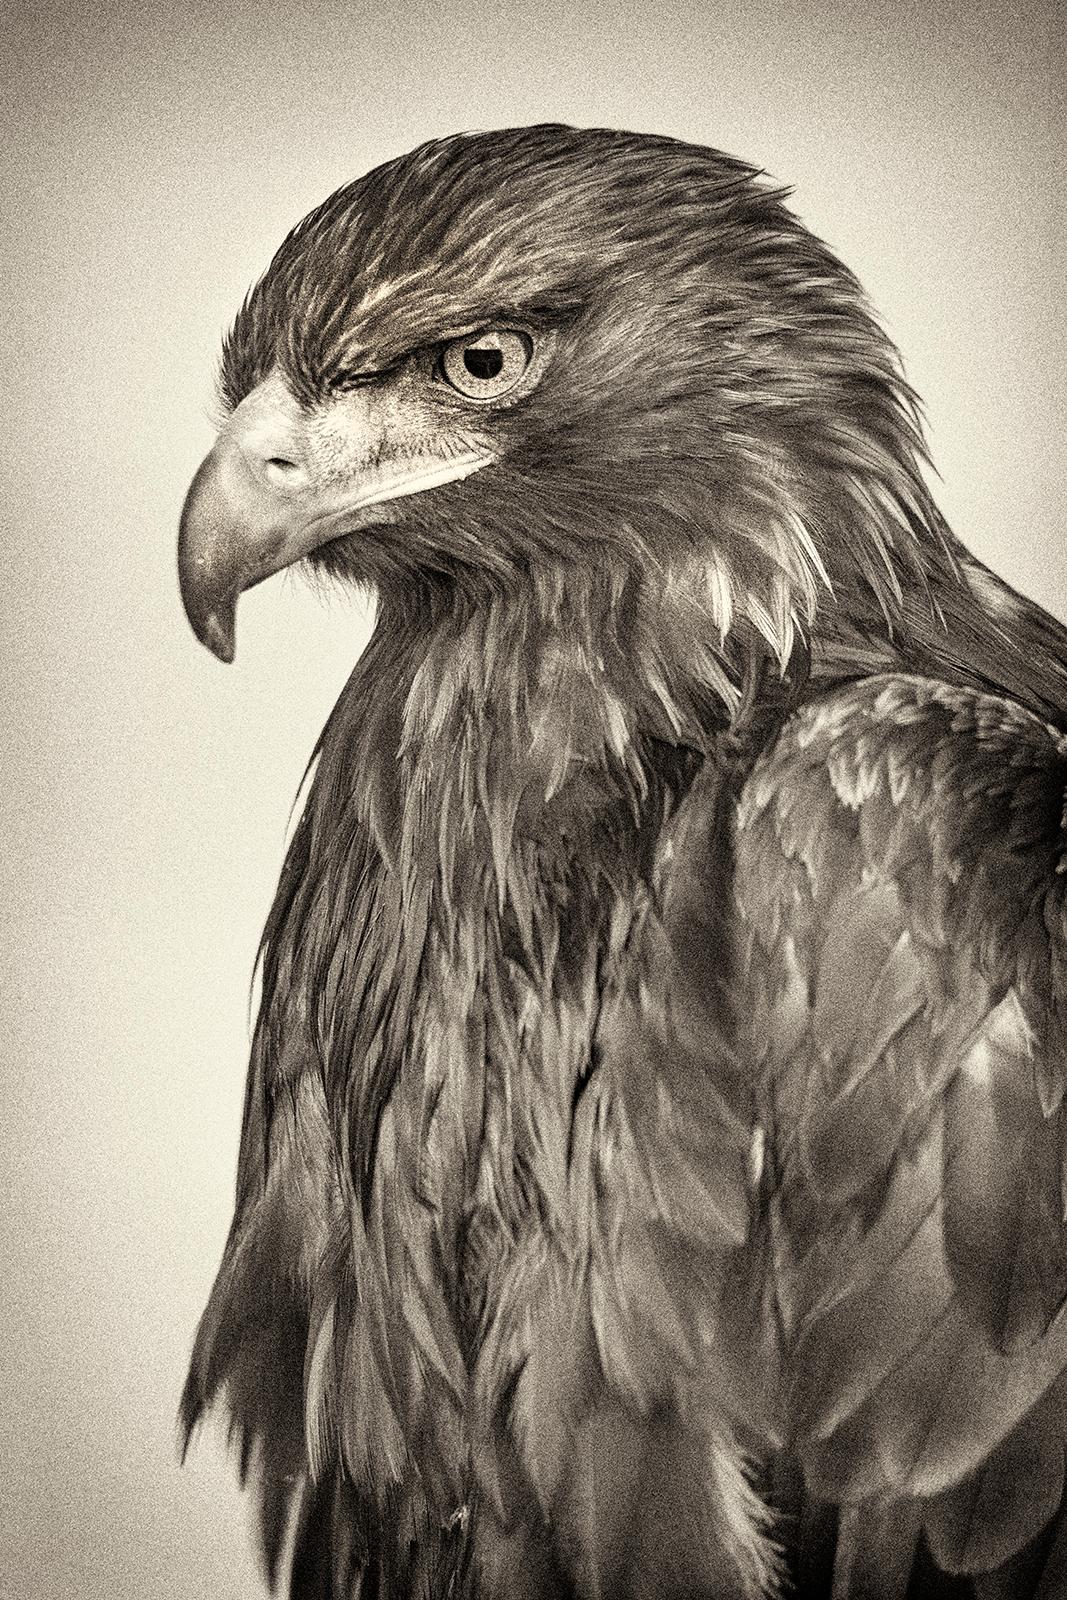 Beth Moon Black and White Photograph – Golden Eagle, Foto in limitierter Auflage, signiert, Platin/Palladium Druck